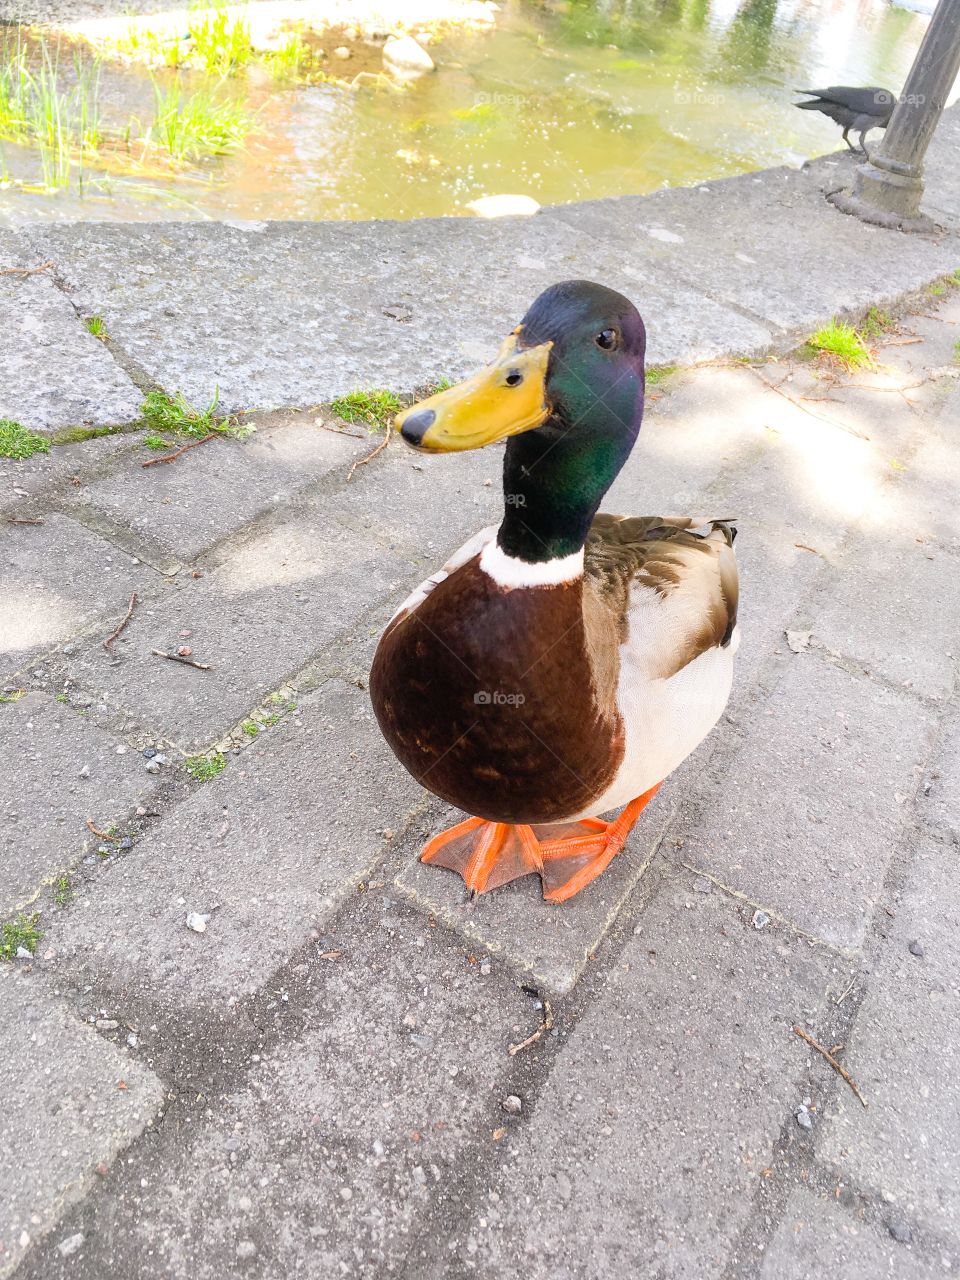 Curious cute duck meeting